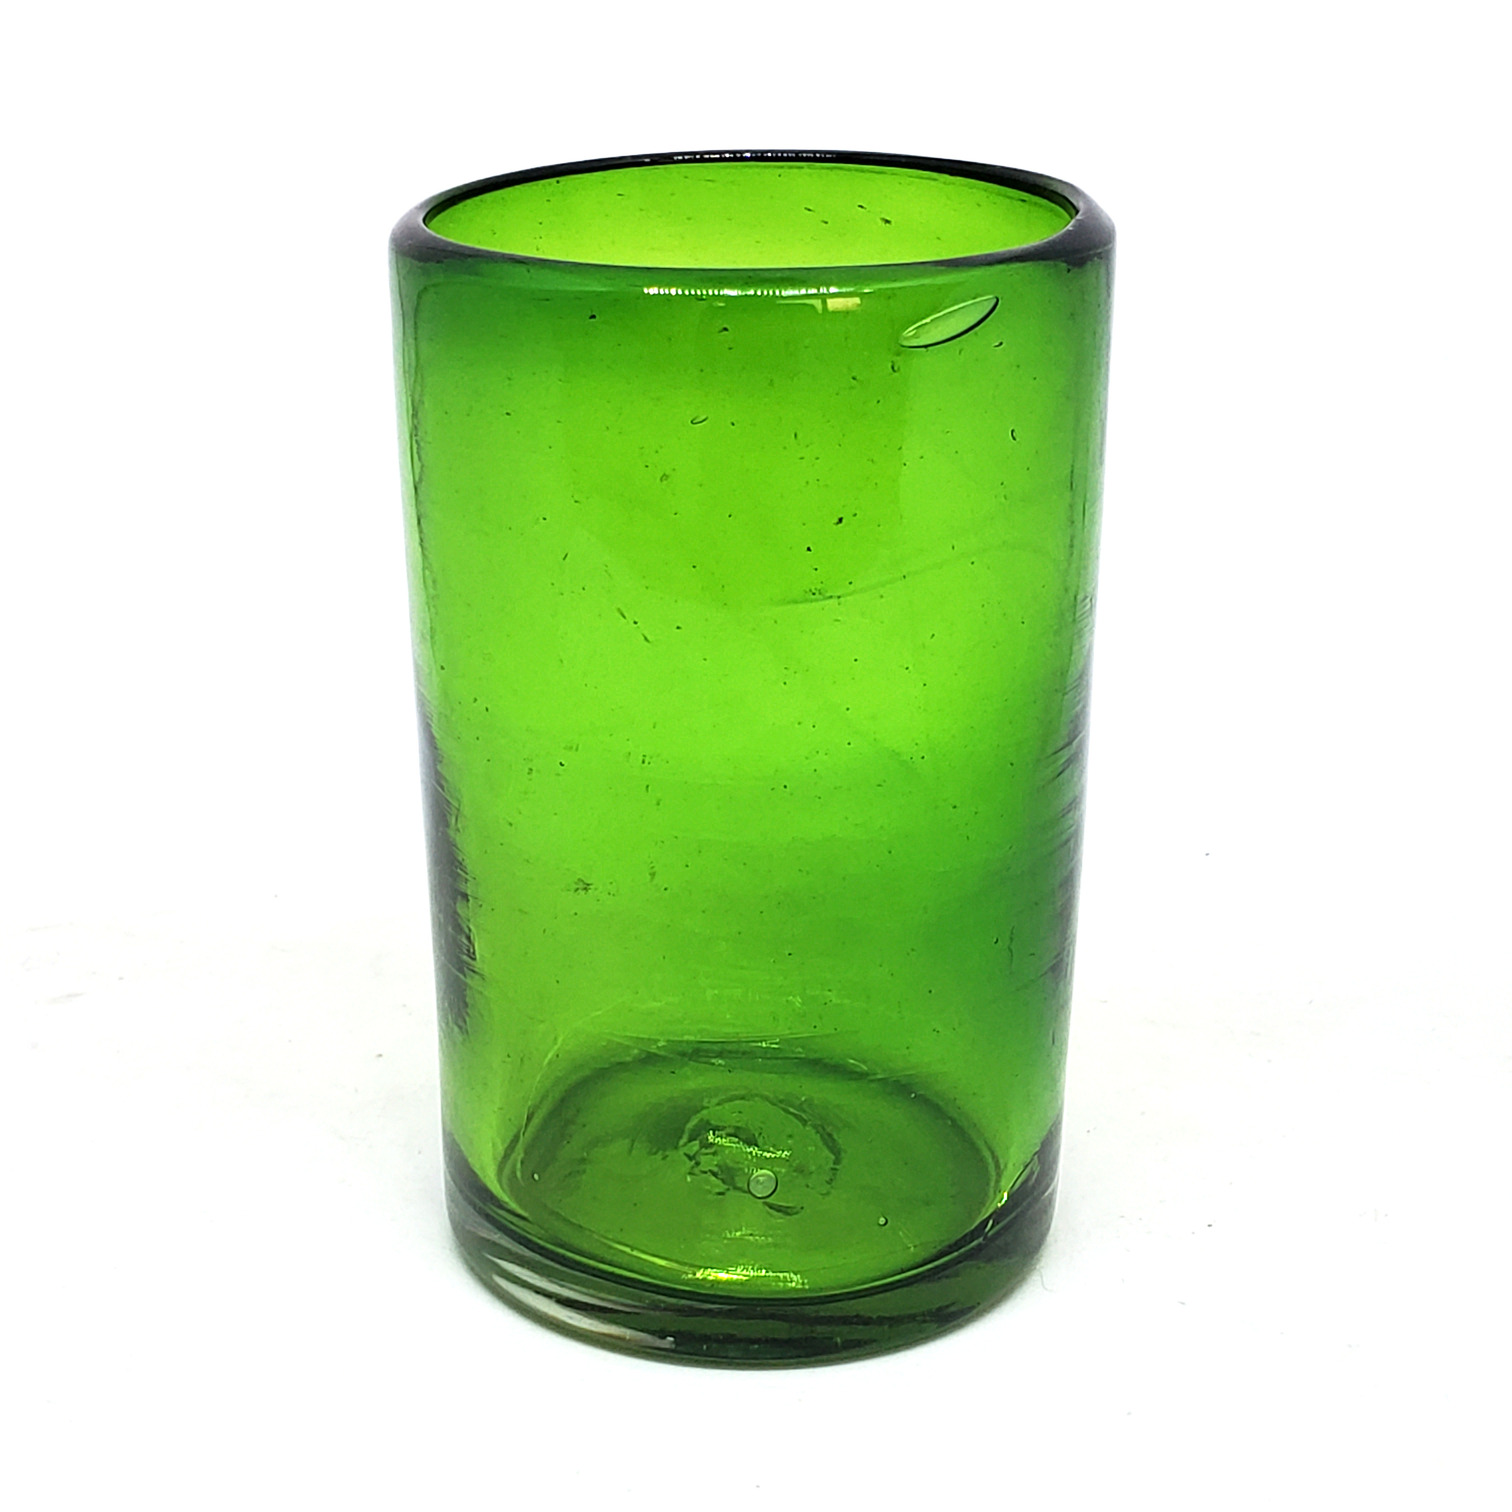 VIDRIO SOPLADO / Juego de 6 vasos grandes color verde esmeralda / Éstos artesanales vasos le darán un toque clásico a su bebida favorita.